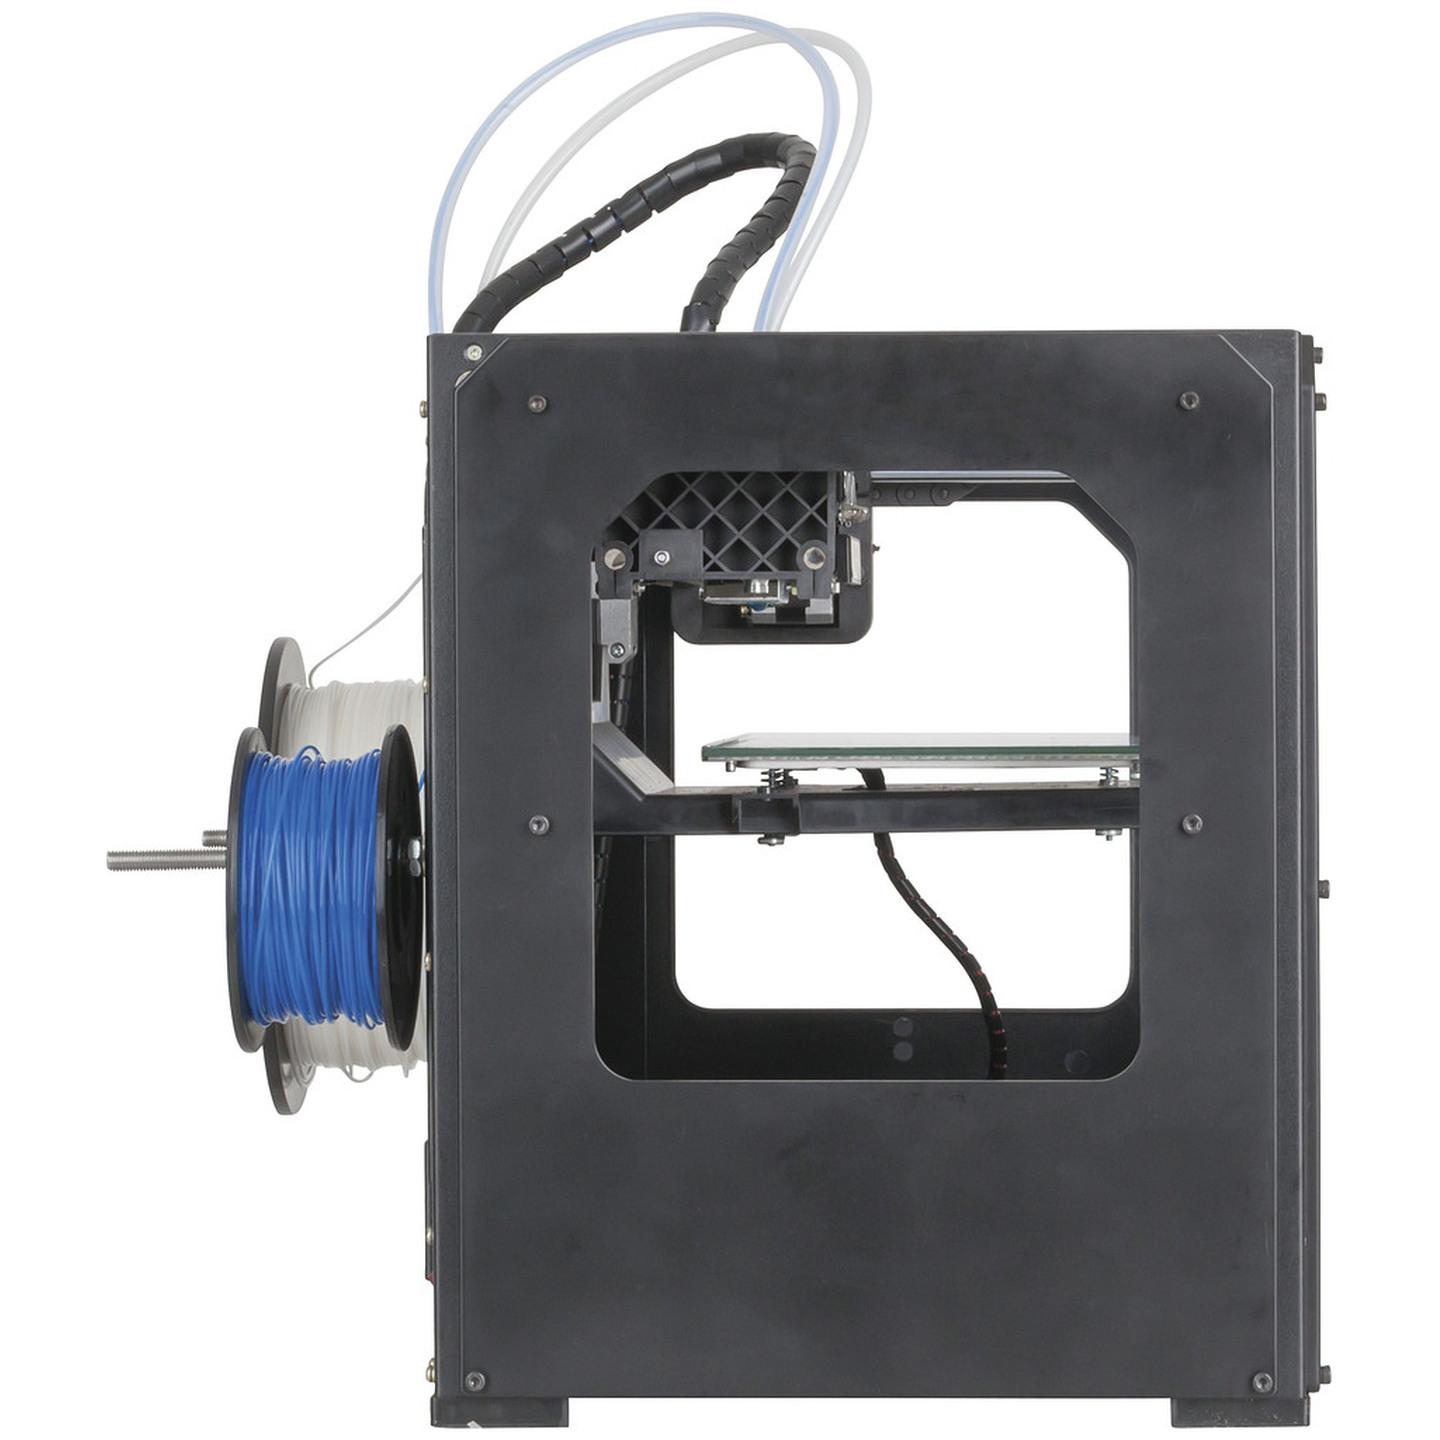 Pre-built Dual Filament 3D Printer